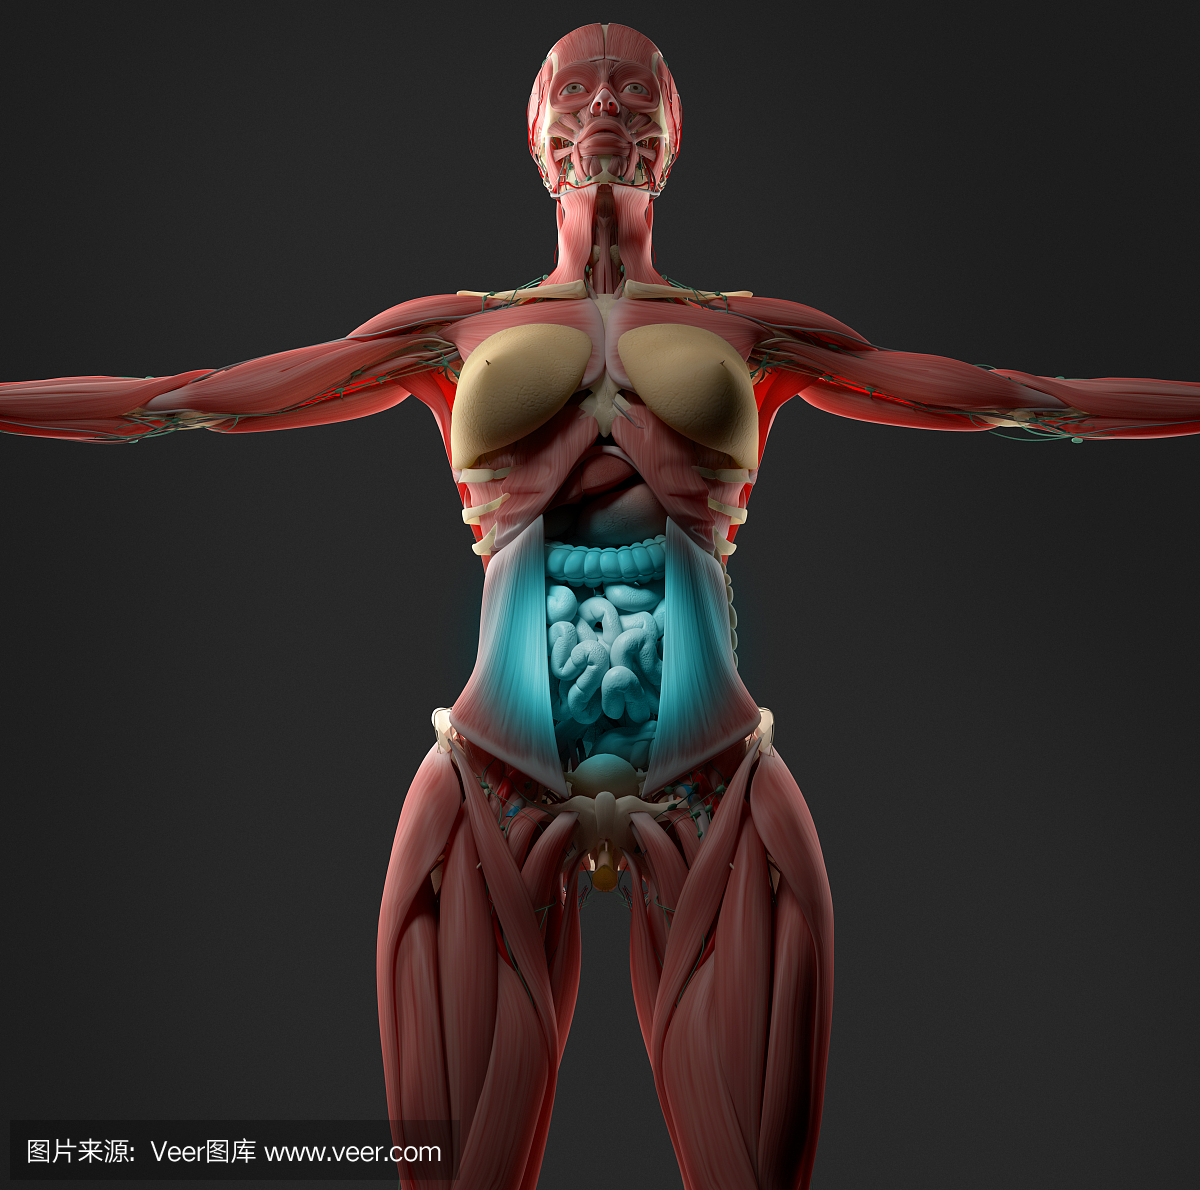 女性腹部解剖模型显示消化不良或消化不良。